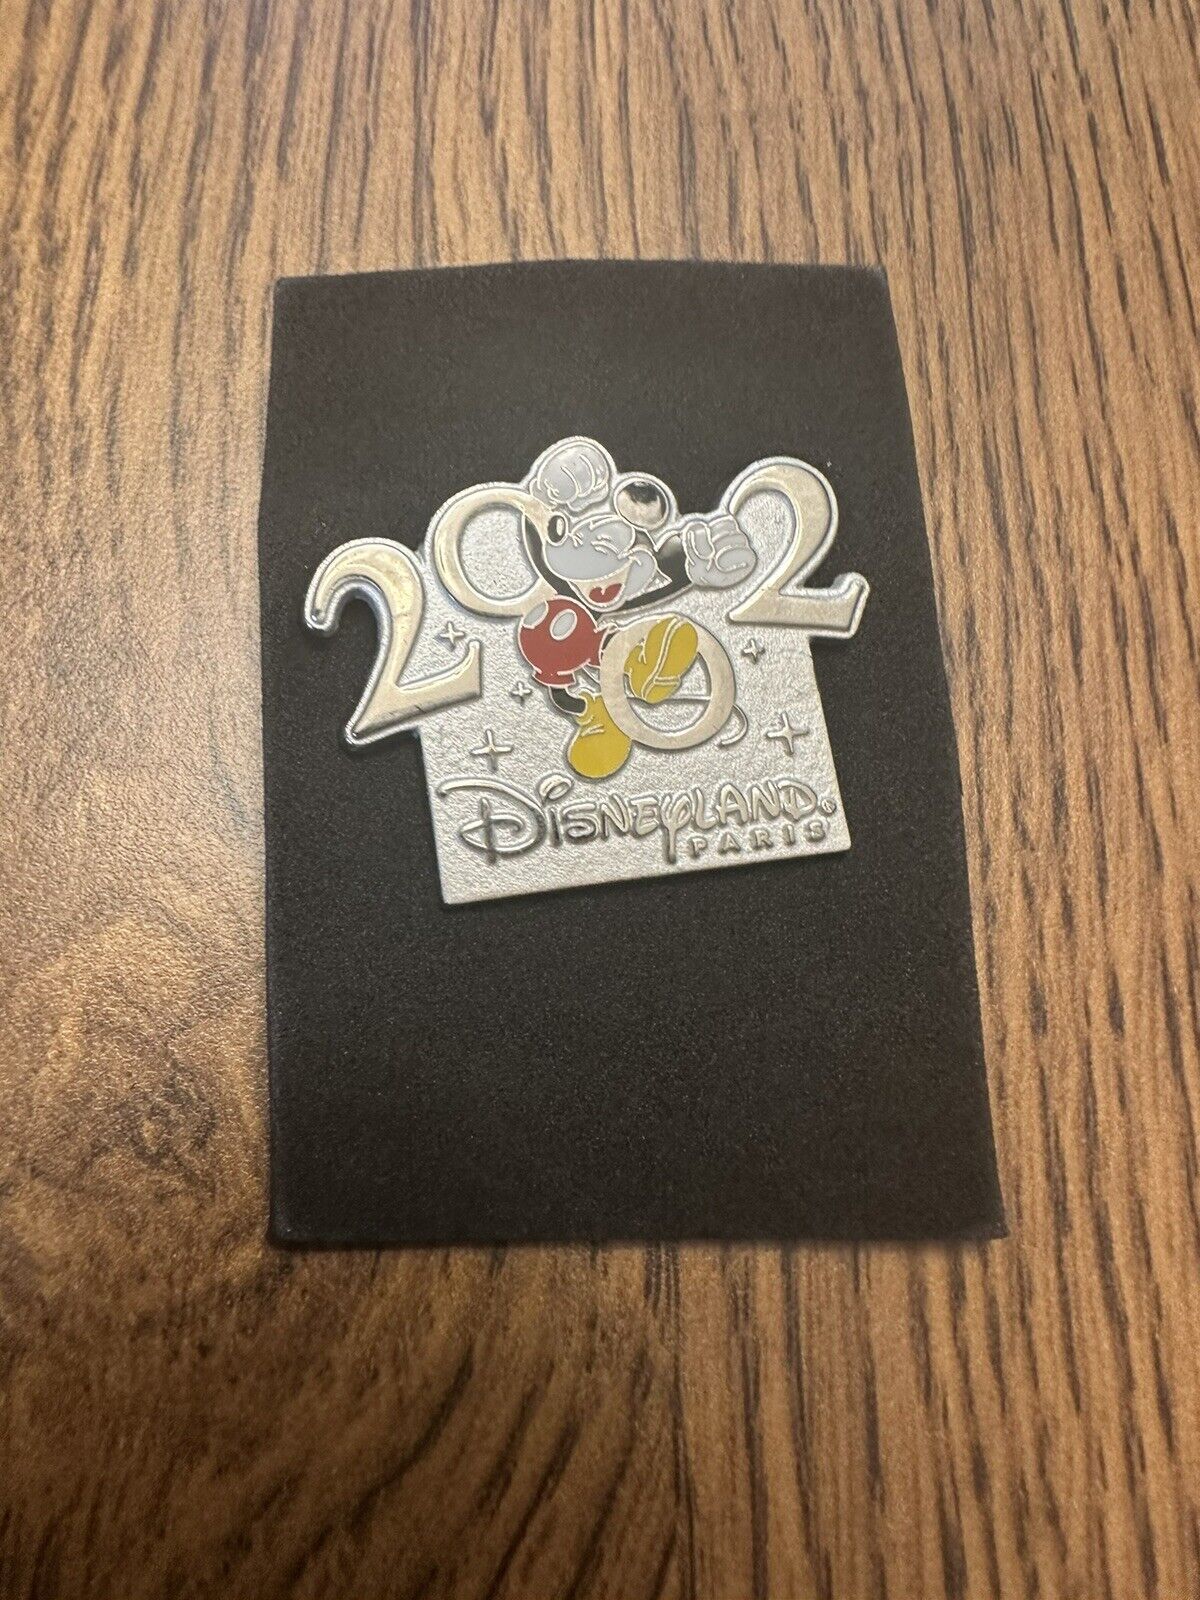 2002 Disneyland Paris Pin